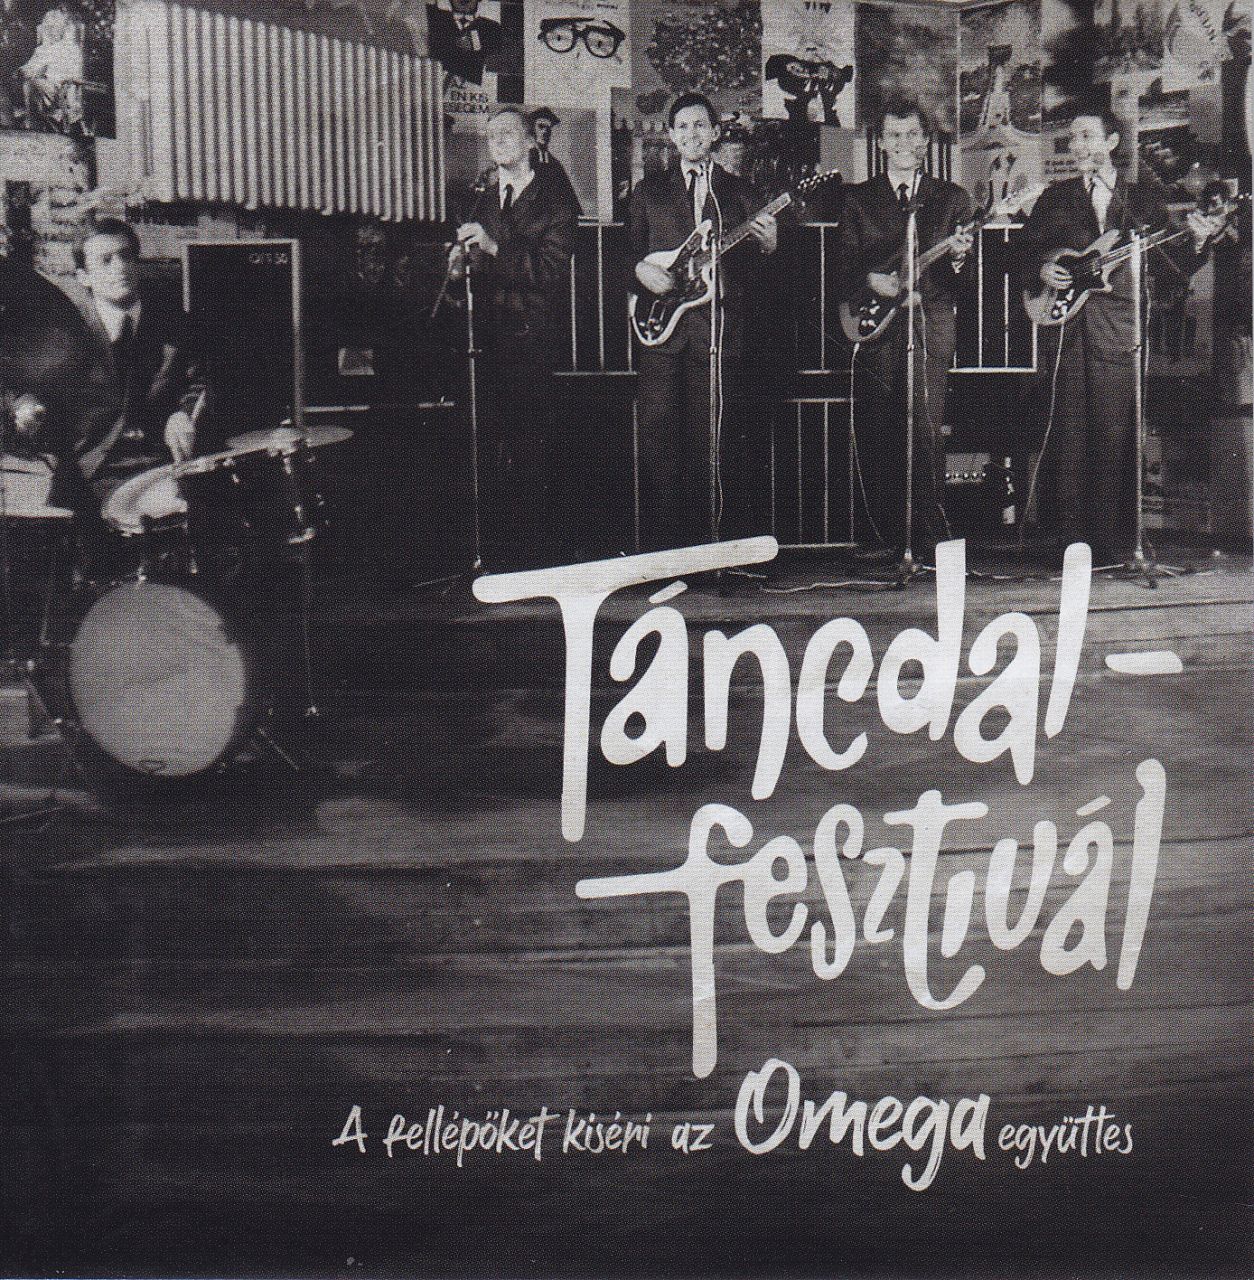 Omega: Táncdalfesztivál – a fellépőket kíséri az Omega együttes (CD)